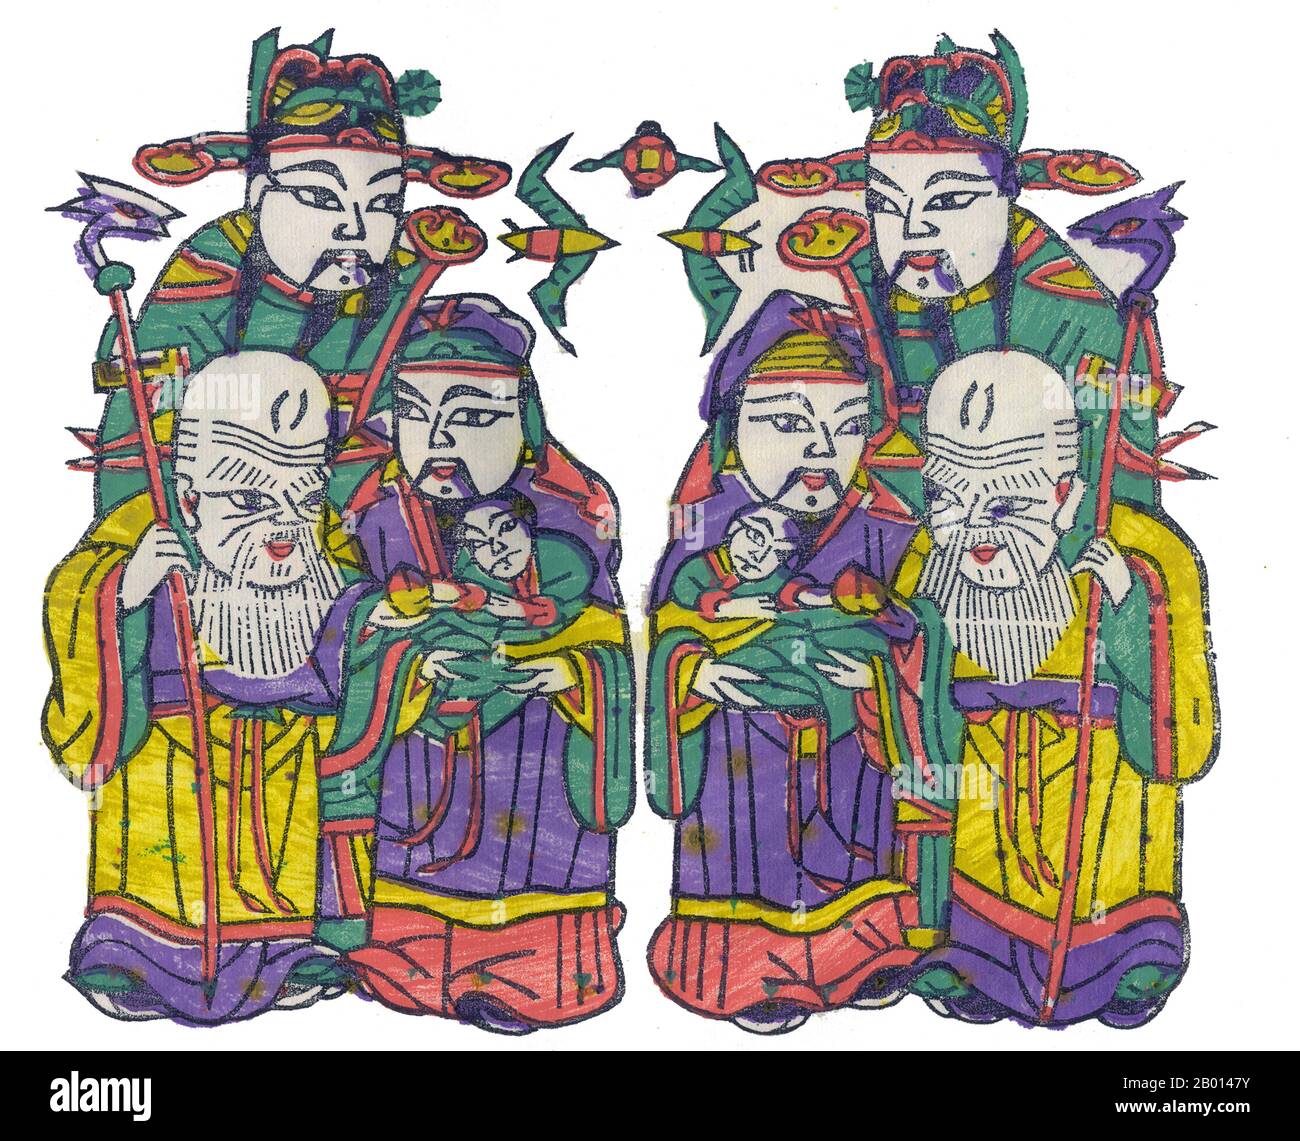 Cina: Gli dei Daoisti di buona fortuna (fu), prosperità (Lu) e longevità (Shou), chiamati collettivamente Fulushou o il Sanxing. Pittura di legno, c. 20 ° secolo. Il termine fu Lu Shou o Fulushou si riferisce collettivamente al concetto di buona Fortuna (fu), prosperità (Lu), e longevità (Shou). Questo concetto taoista si pensa risalga alla Dinastia Ming, quando la fu Star, la Lu Star e la Shou Star sono state considerate divinità personificate di questi attributi rispettivamente. Il termine è comunemente usato nella cultura cinese per indicare i tre attributi di una buona vita. Foto Stock